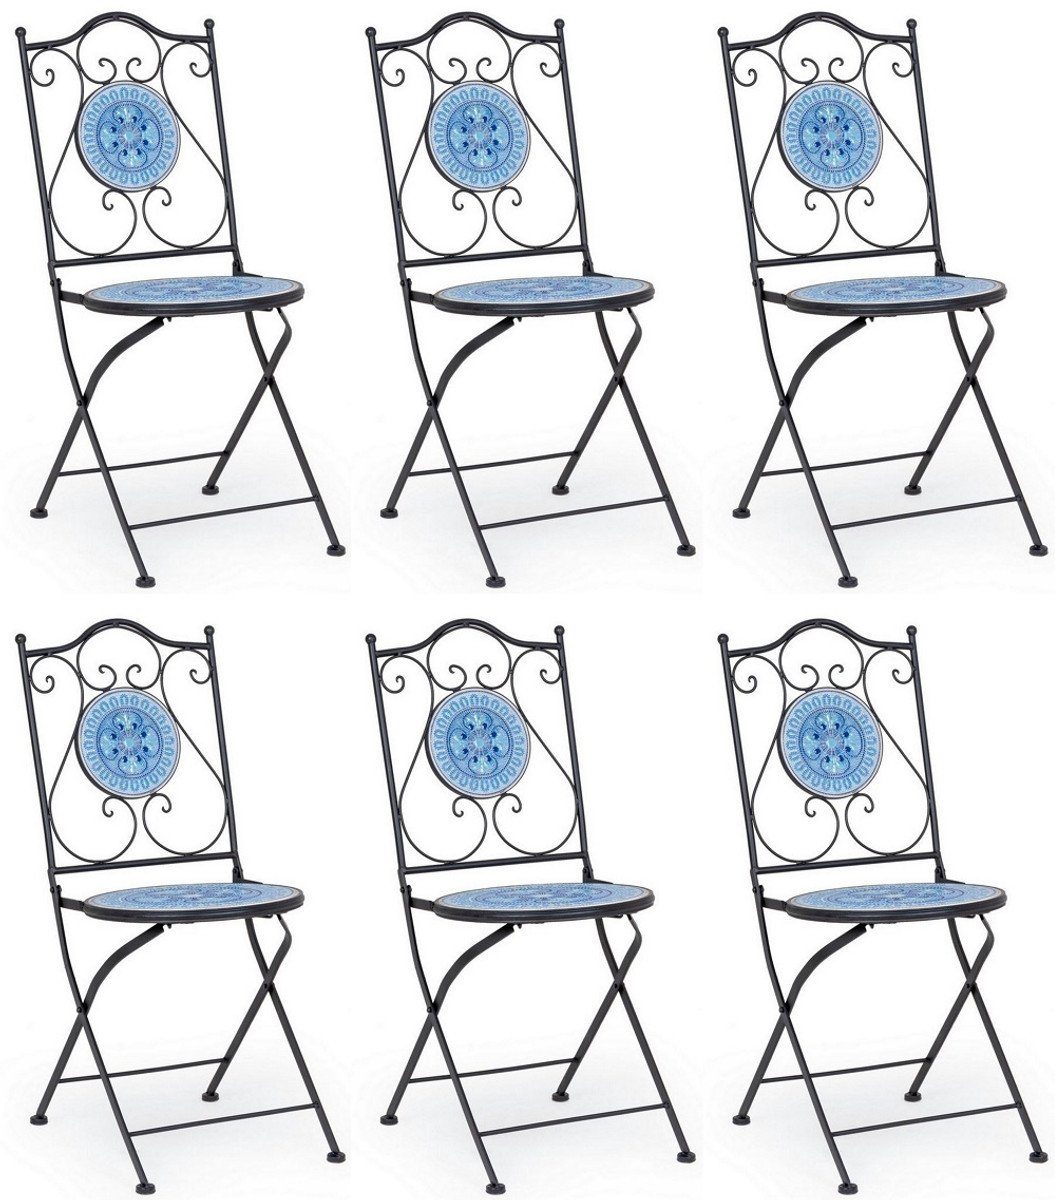 Casa Padrino Gartenstuhl Jugendstil Gartenstuhl 6er Set Schwarz / Blau / Weiß 39 x 47 x H. 92 cm - Klappbare Stühle mit Keramik Platten - Nostalgische Garten & Gastronomie Möbel